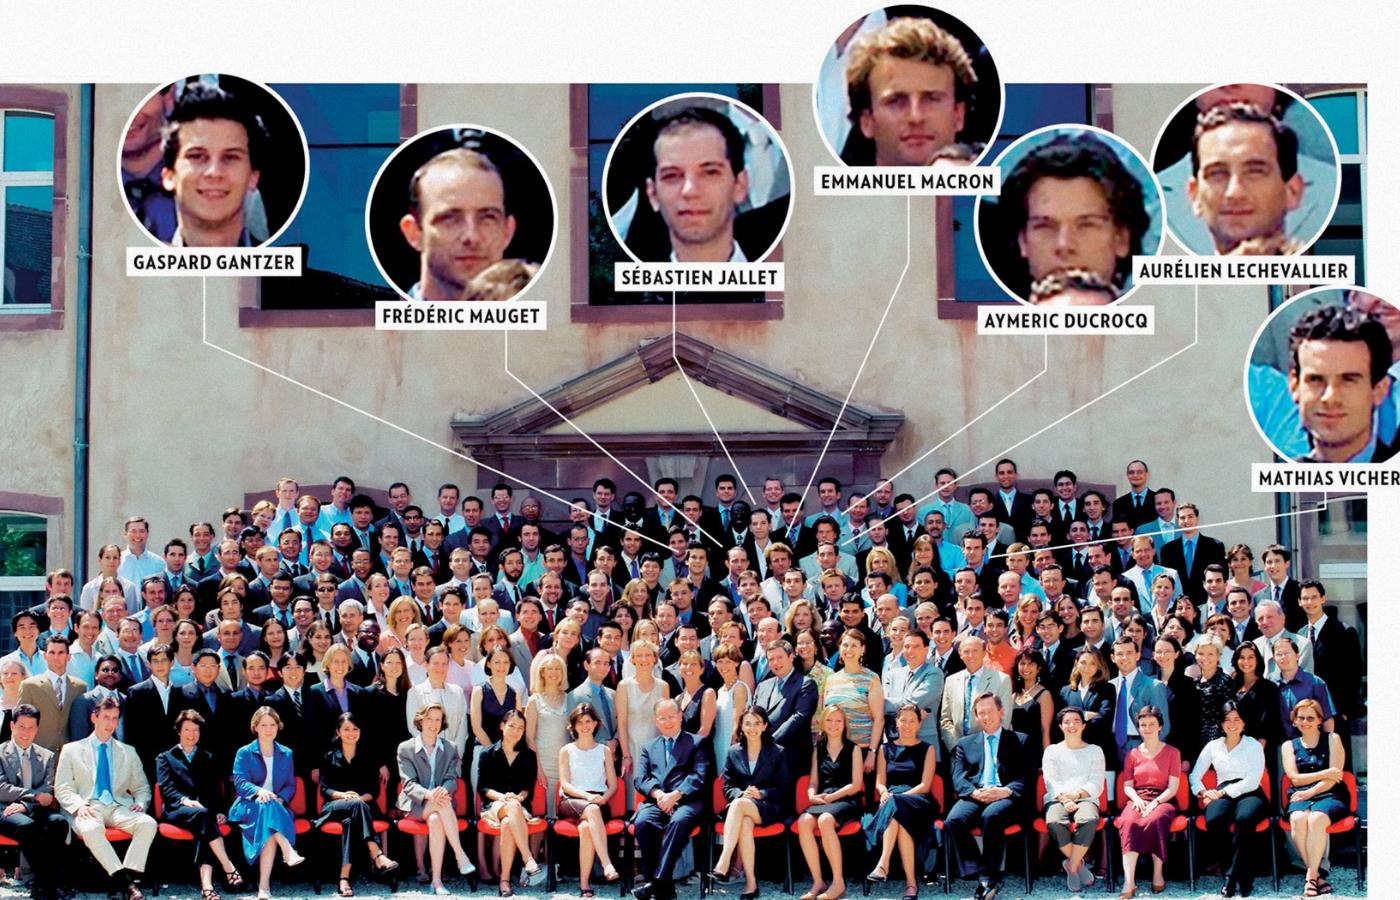 Rocznik 2004 absolwentów ENA z dzisiejszym prezydentem Emmanuelem Macronem i jego sześcioma bliskimi kolegami, rówieśnikami, z których każdy dziś zajmuje wysokie stanowisko w wielkich koncernach, bankowości i dyplomacji.